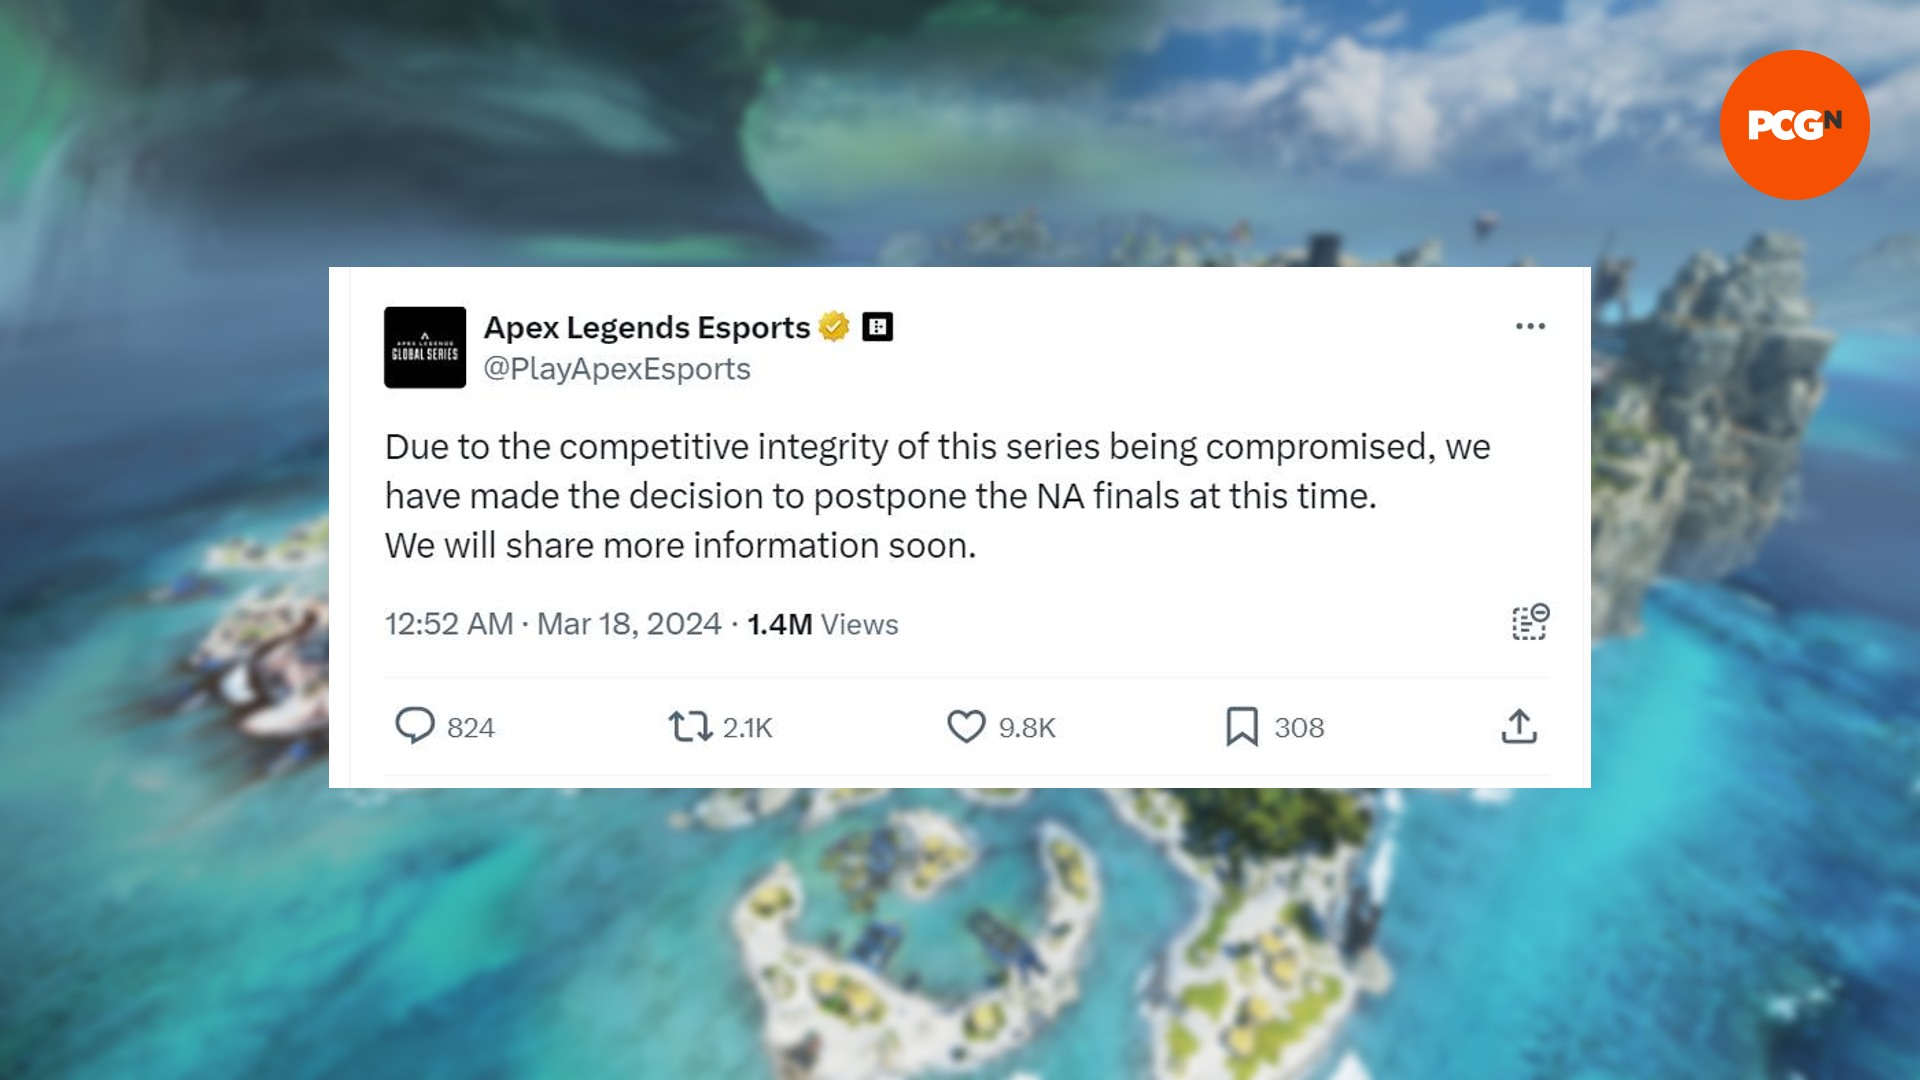 Un comentario de la cuenta de Twitter de Apex Legends que analiza la decisión de posponer las finales de ALGS NA debido a preocupaciones de integridad competitiva.